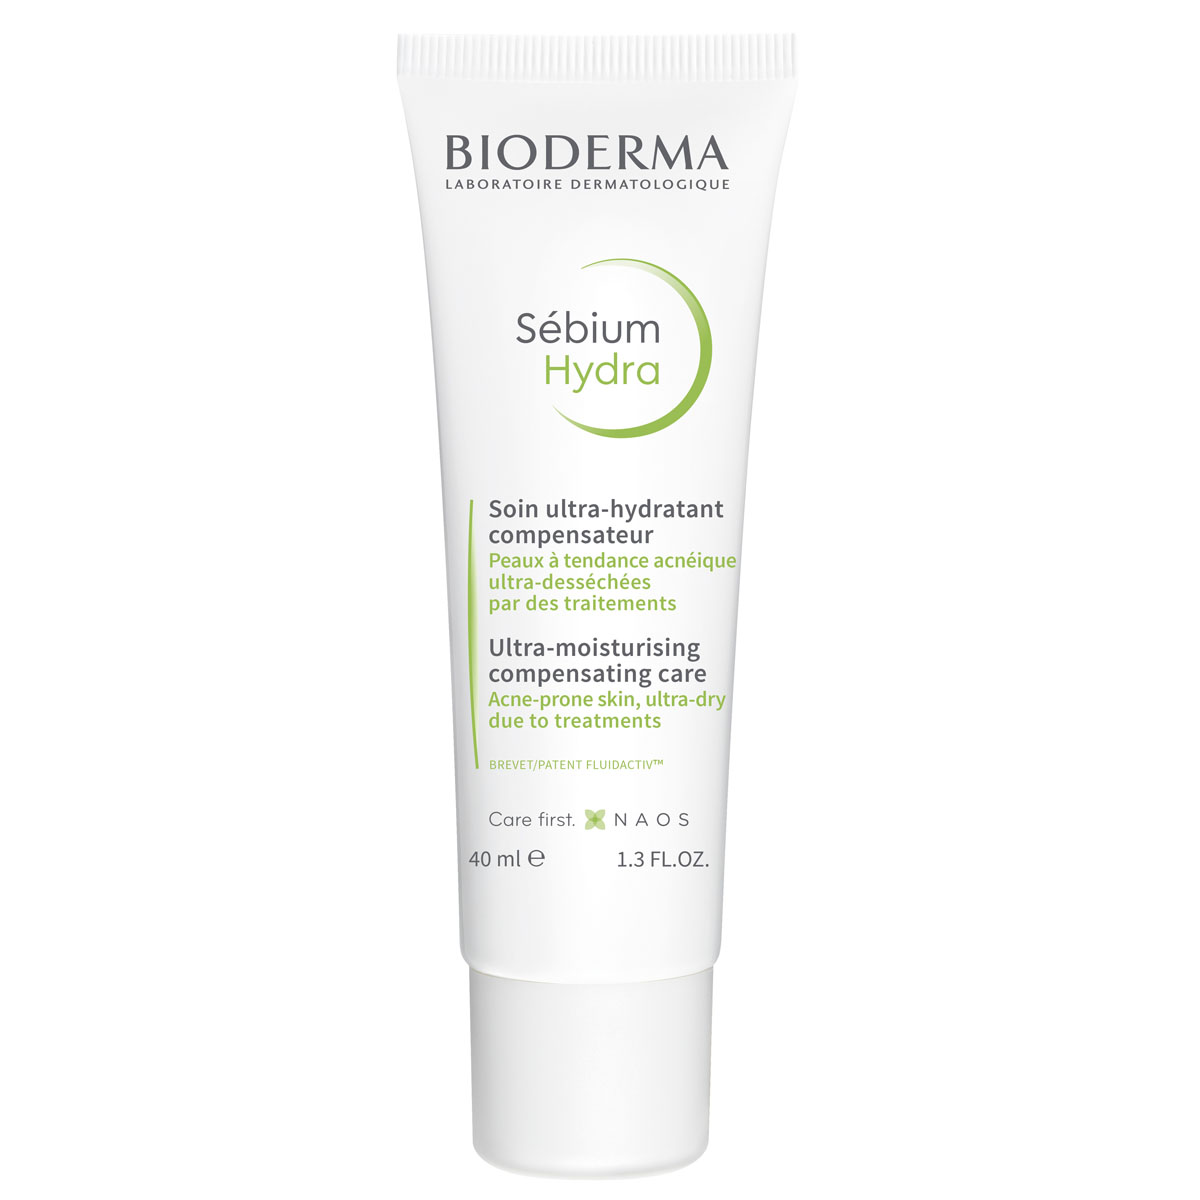 Купить Bioderma Увлажняющий крем Hydra для пересушенной кожи с воспалениями, 40 мл (Bioderma, Sebium), Франция